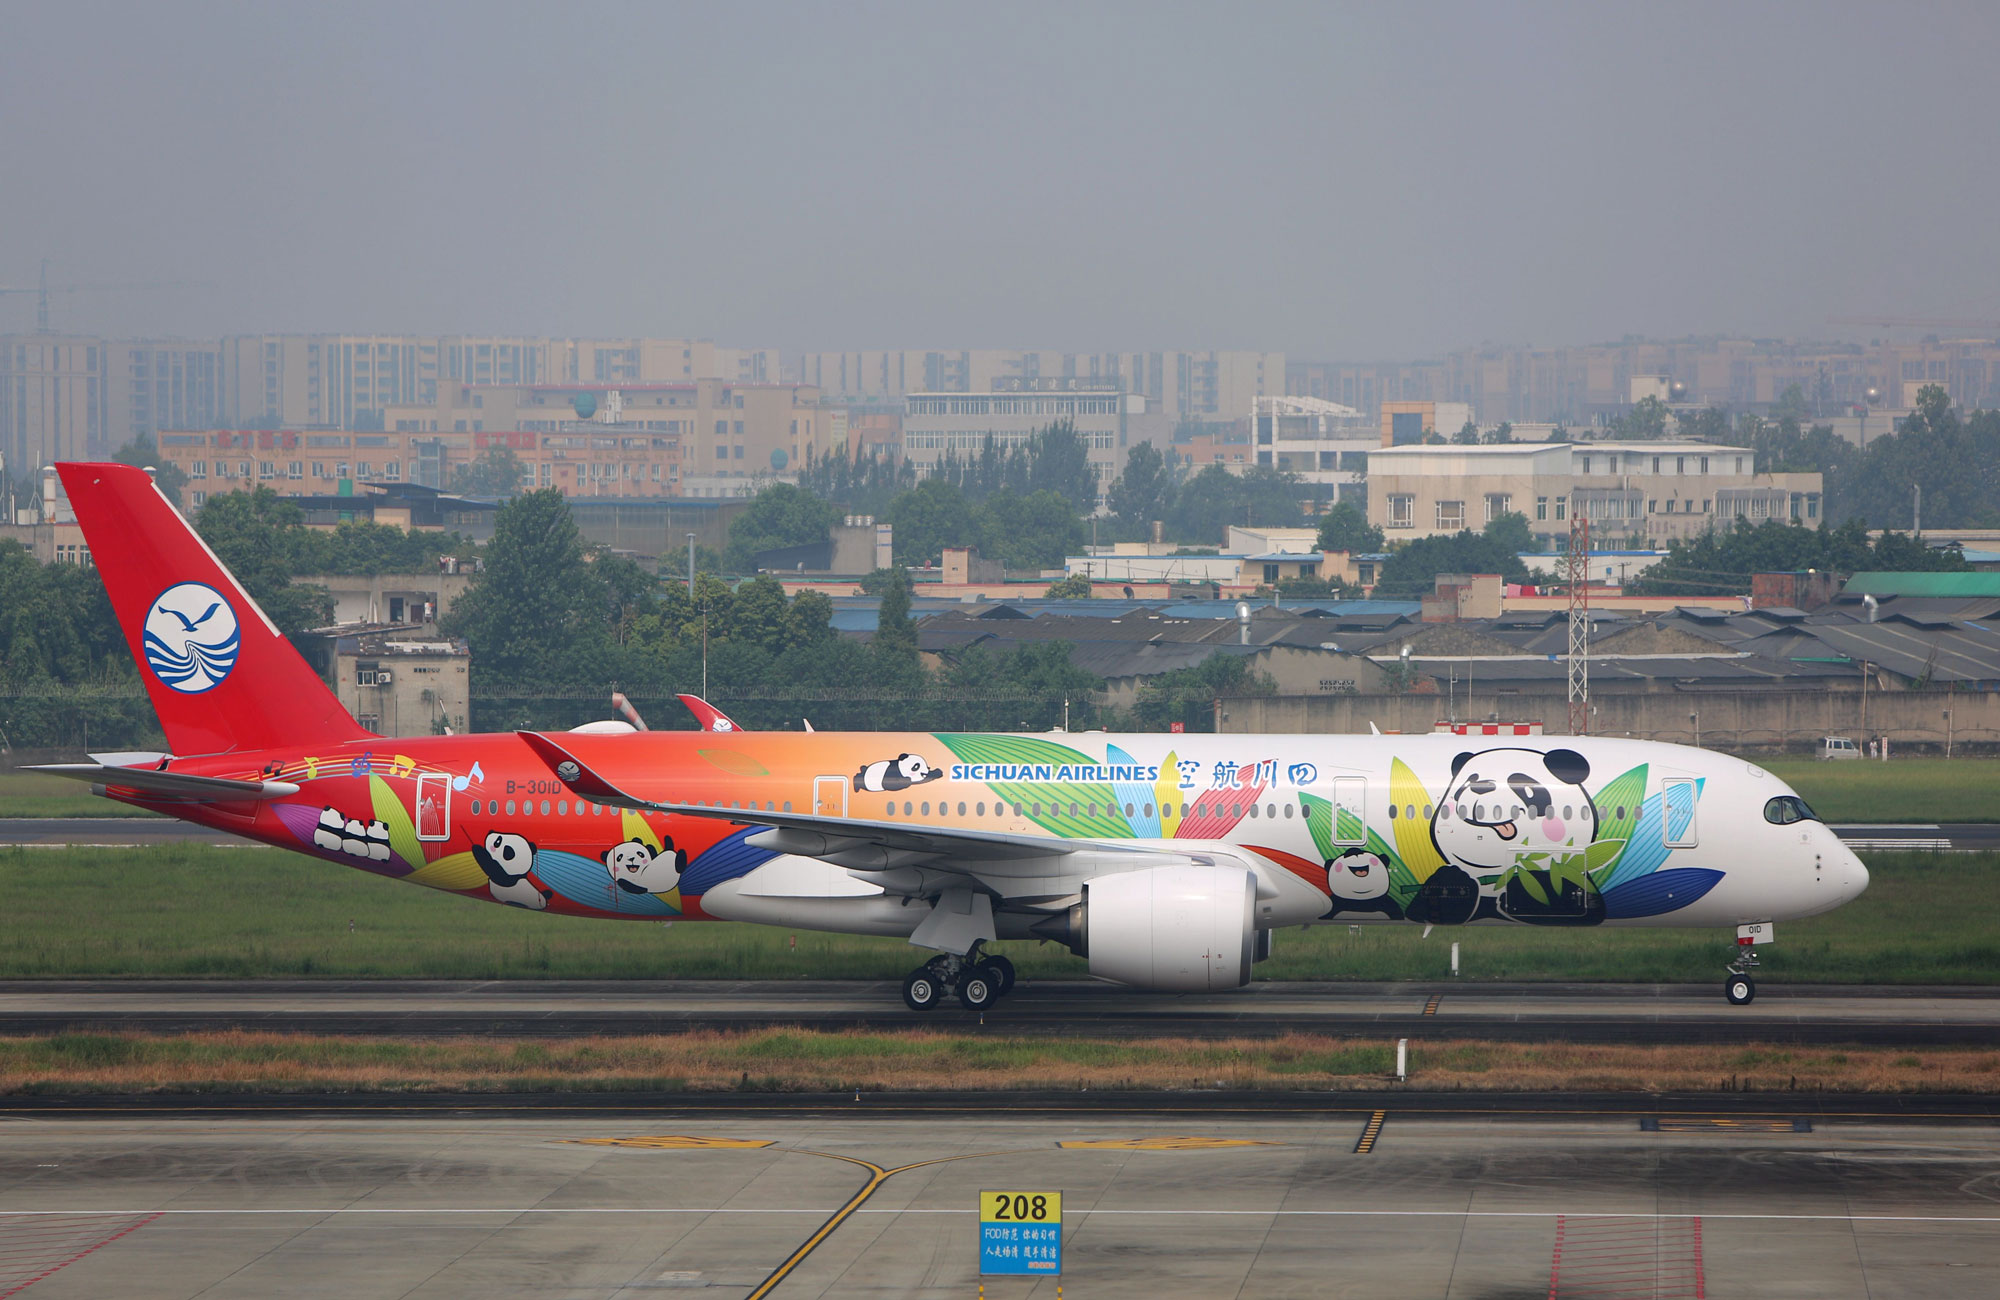 Höchstmögliche Betriebssicherheit ist ein Markenkernwert der 2002 gegründeten Sichuan Airlines. Foto: Lufthansa Technik/Sichuan Airlines